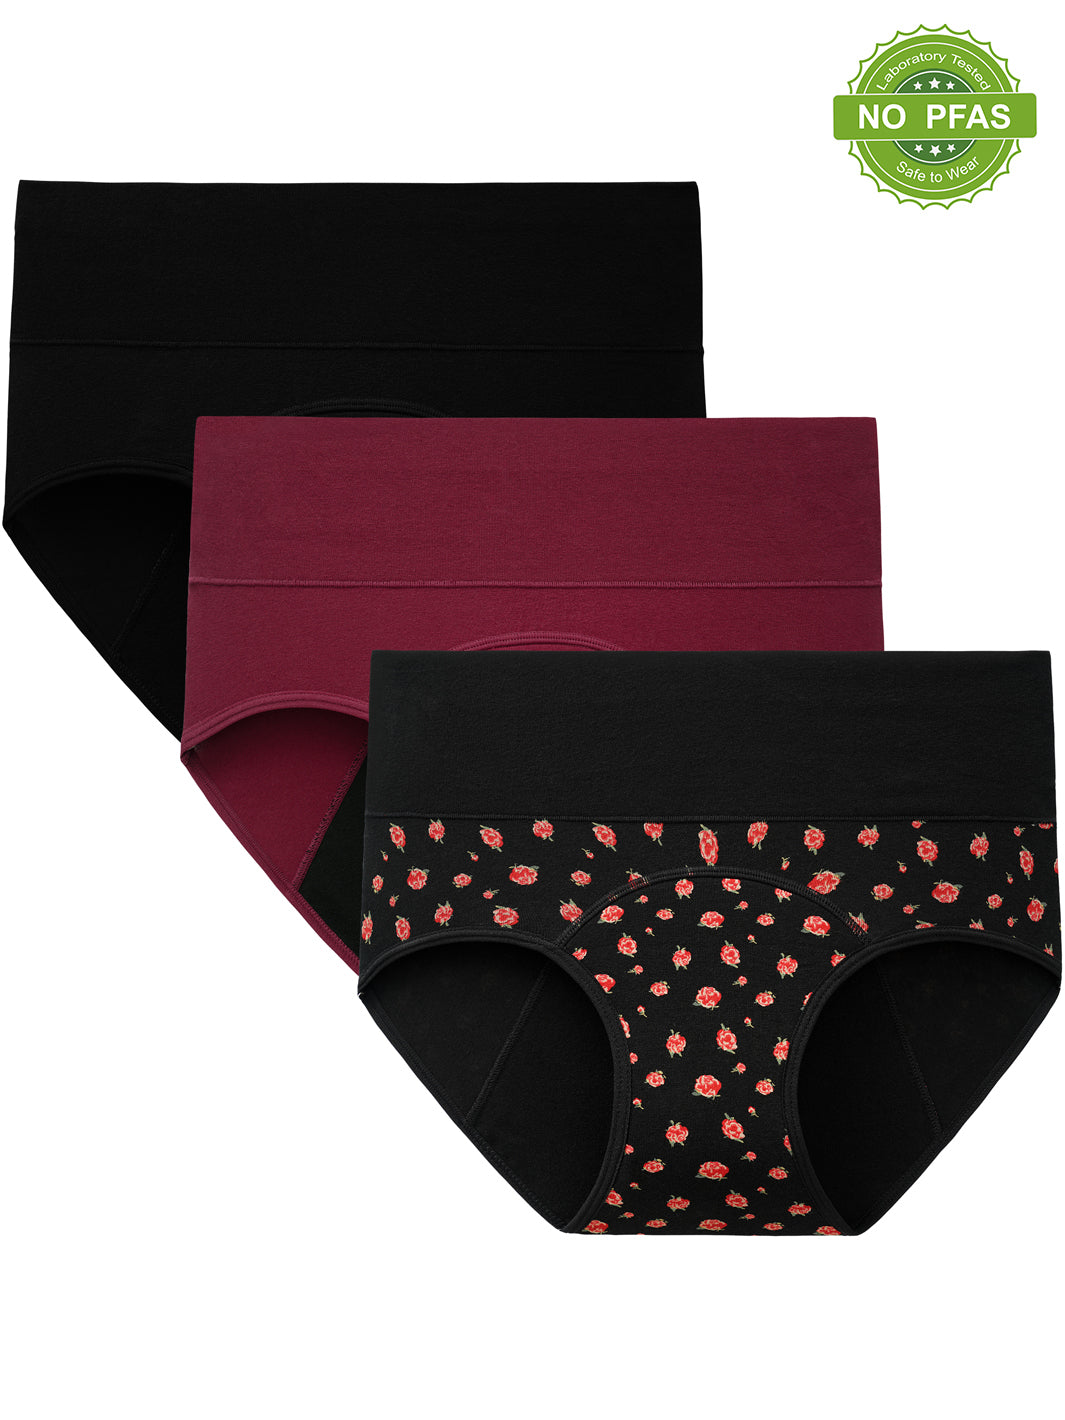 Period Panties, Menstrual Underwear